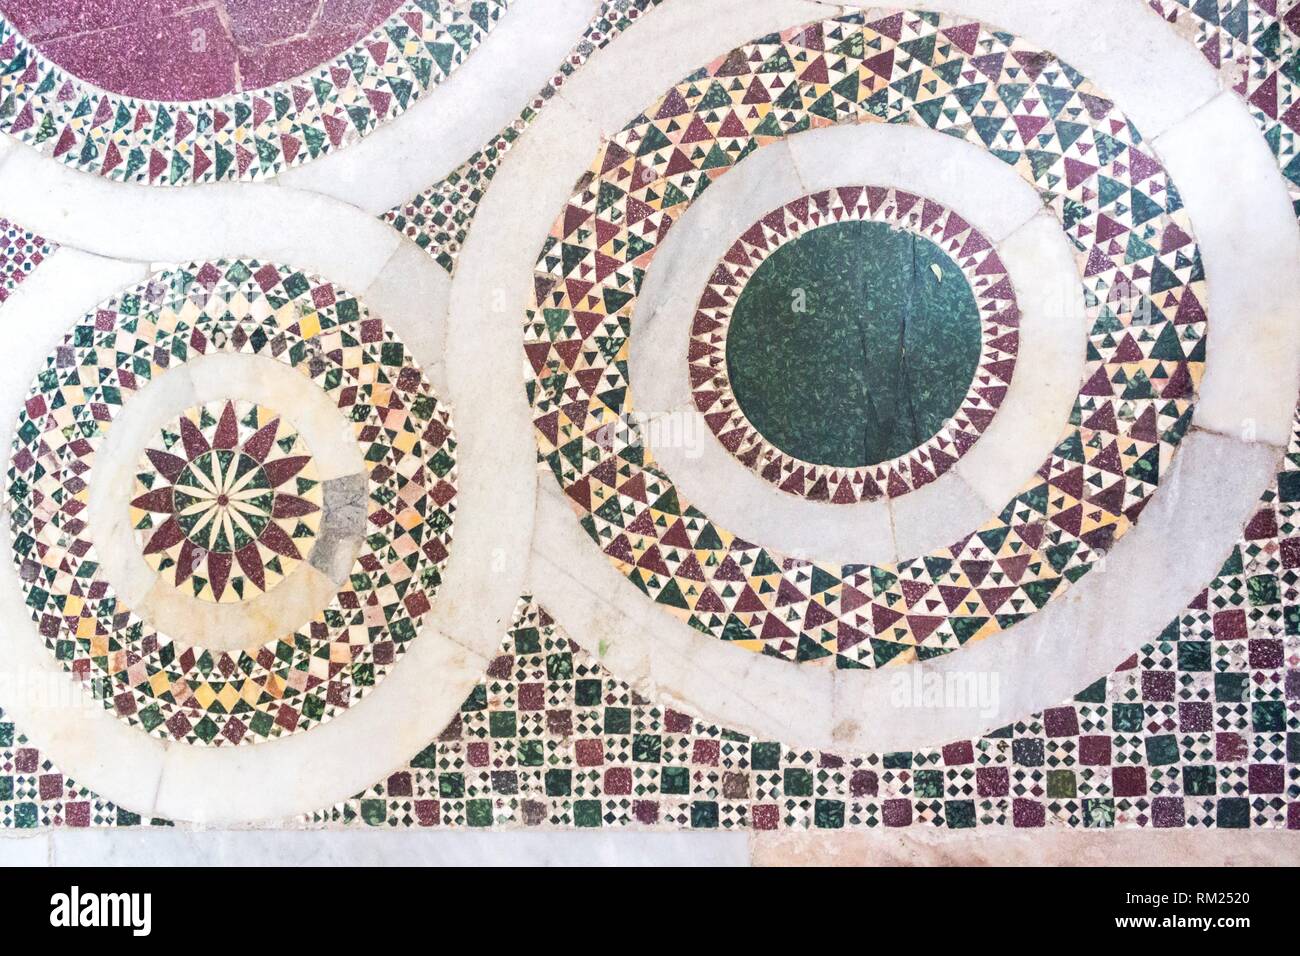 Details of Byzantine mosaics in Church of Martorana. Palermo, Sicily. Italy. Stock Photo